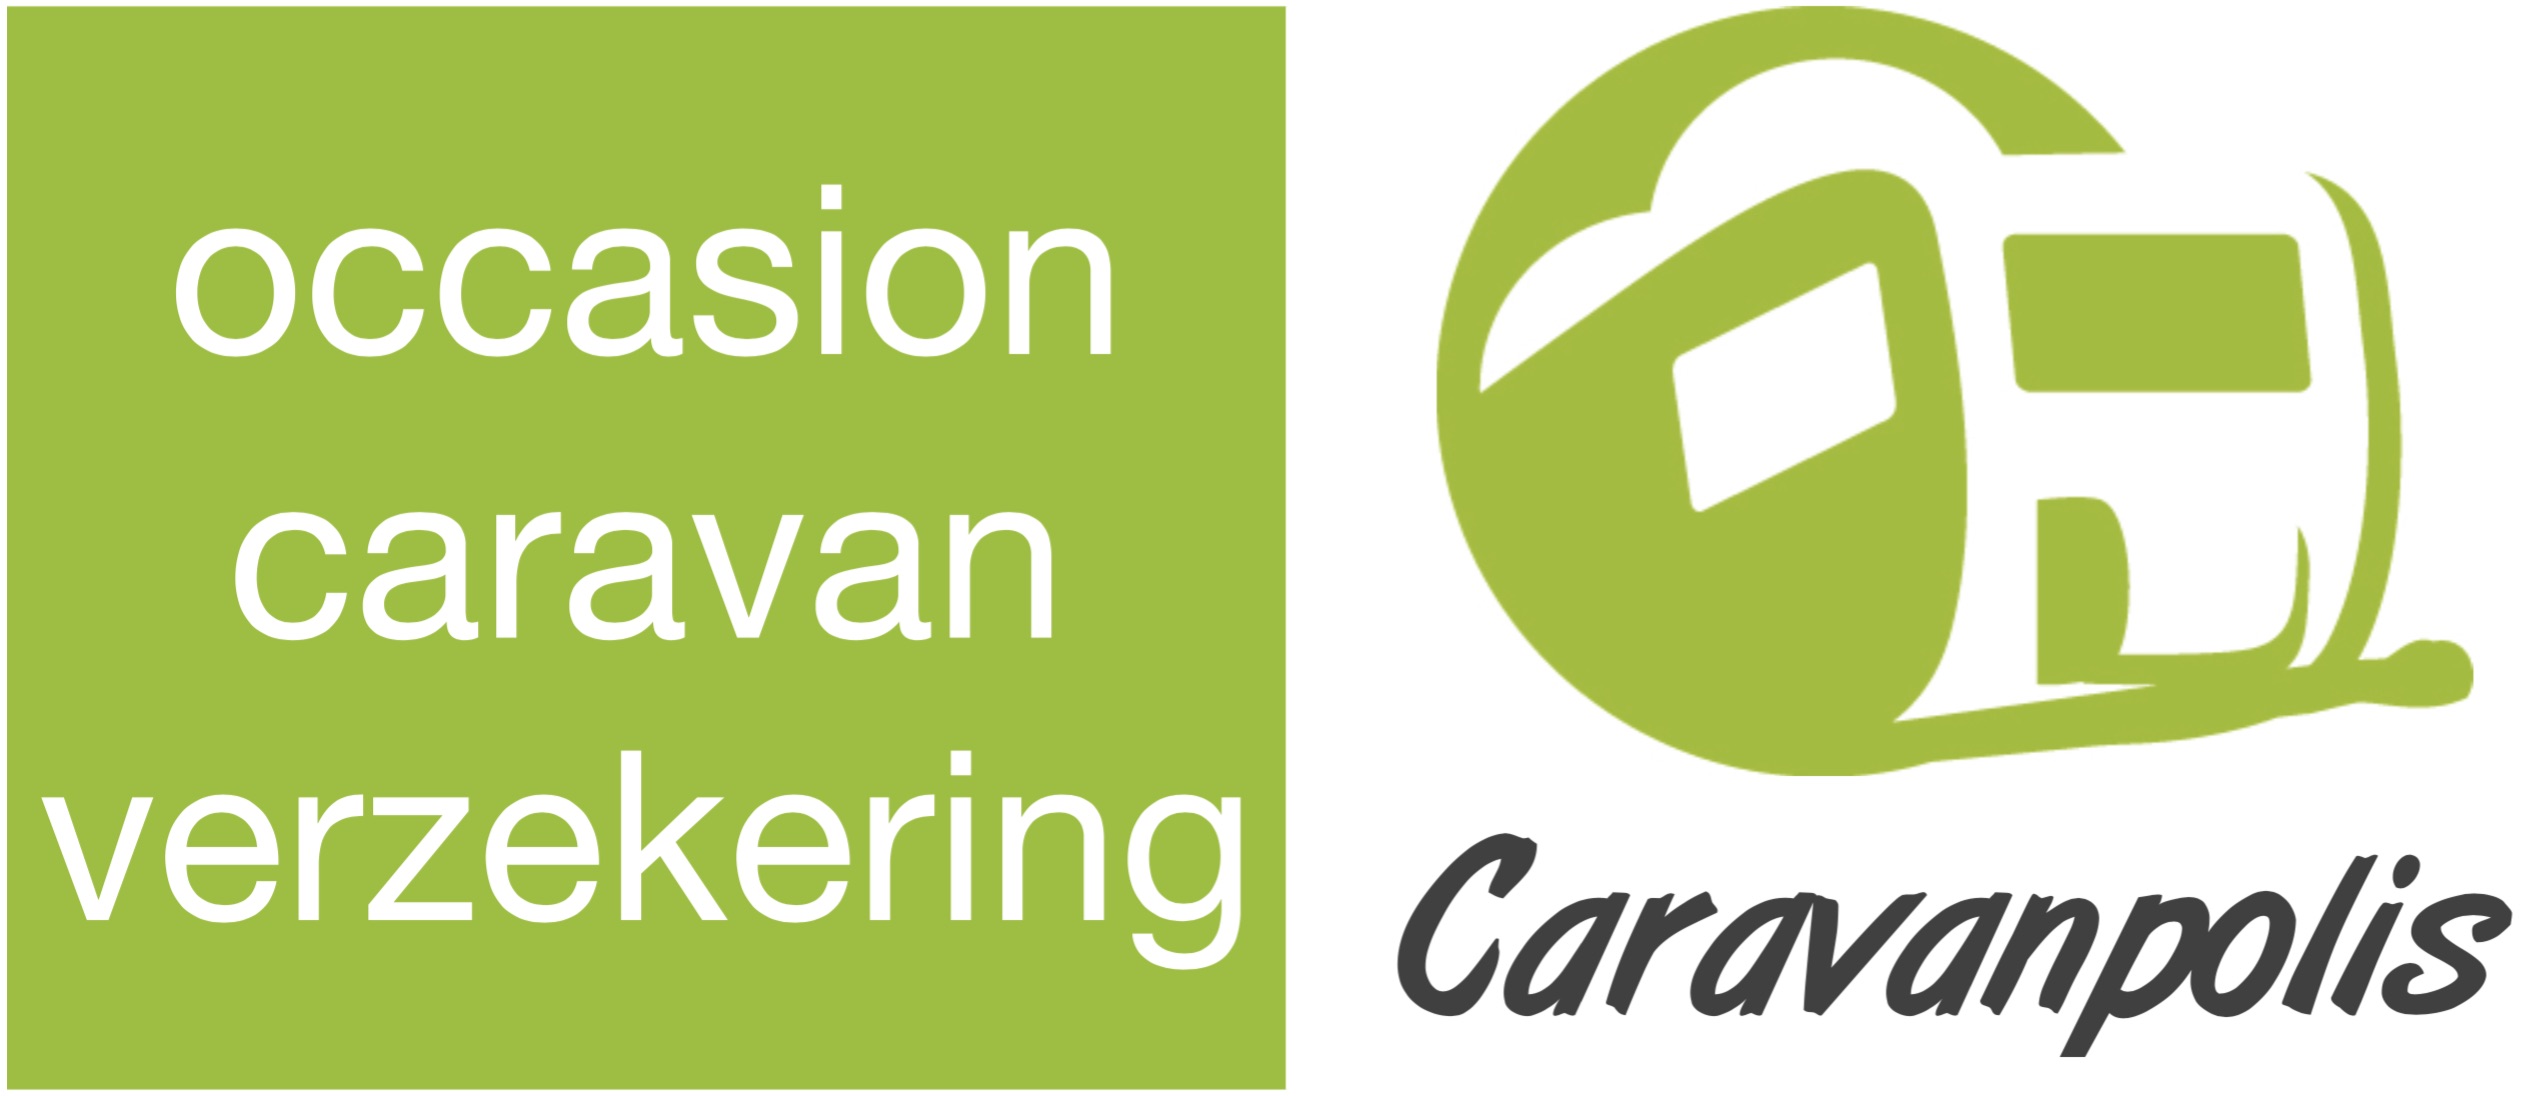 Occasion caravan verzekering